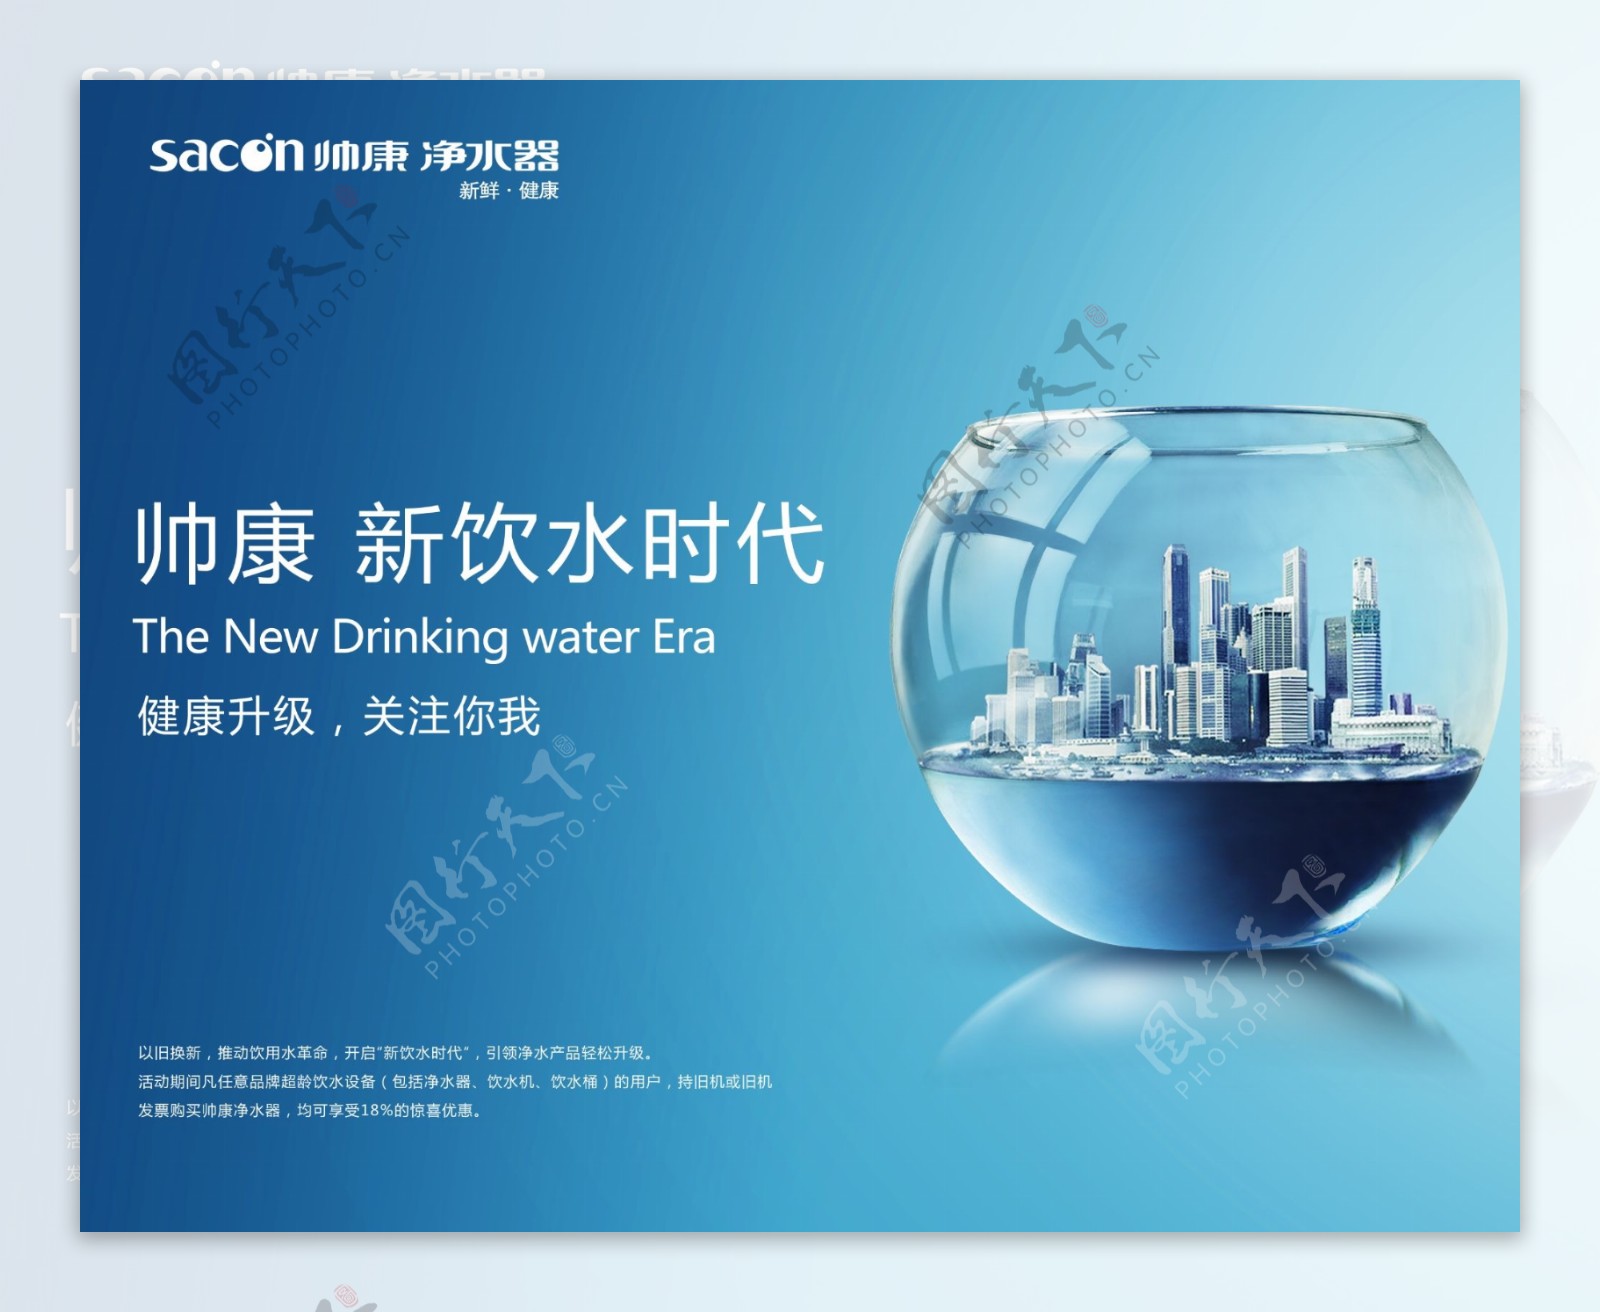 新饮水时代帅康净水器创意广告图片